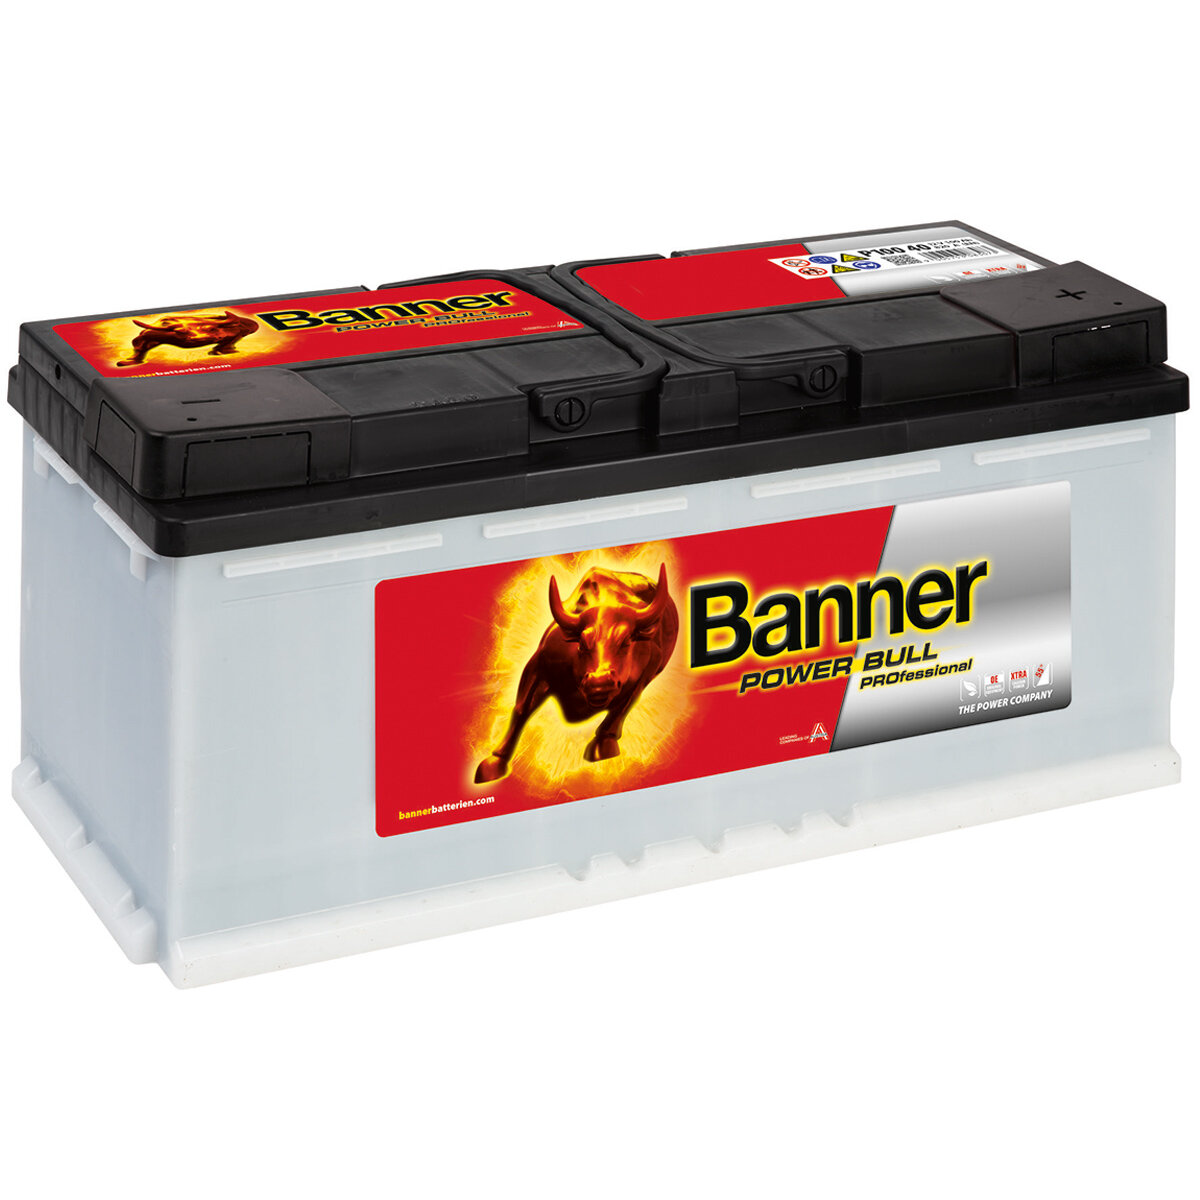 https://www.winnerbatterien.de/media/image/product/4125/lg/banner-power-bull-professional-p100-40-starterbatterie-100ah-12v.jpg